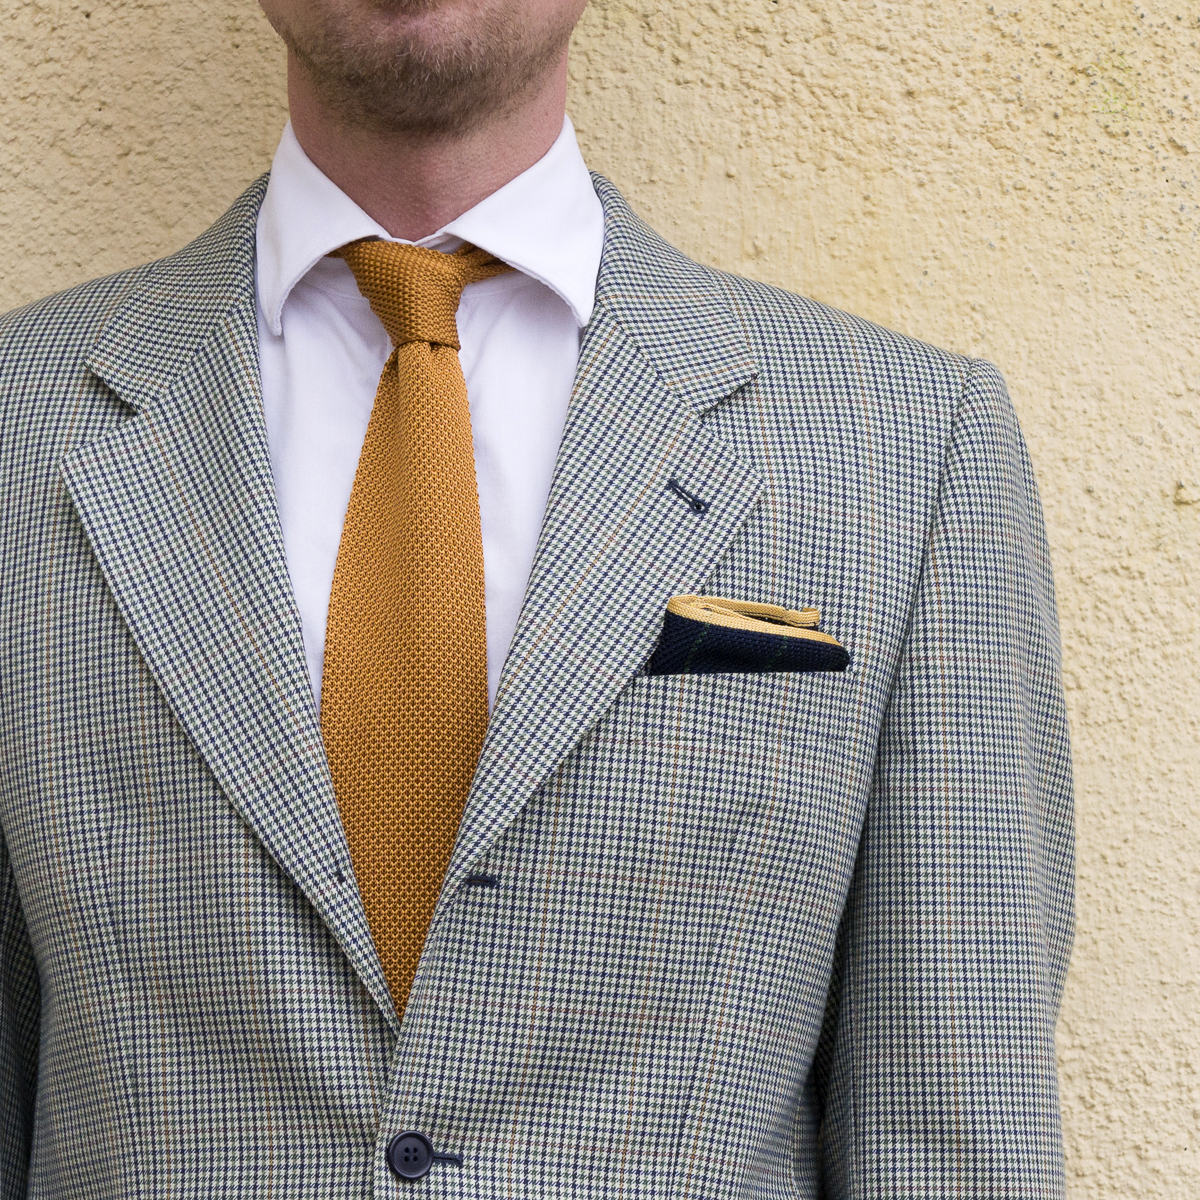 Aurelio classic necktie, Arild pocket square